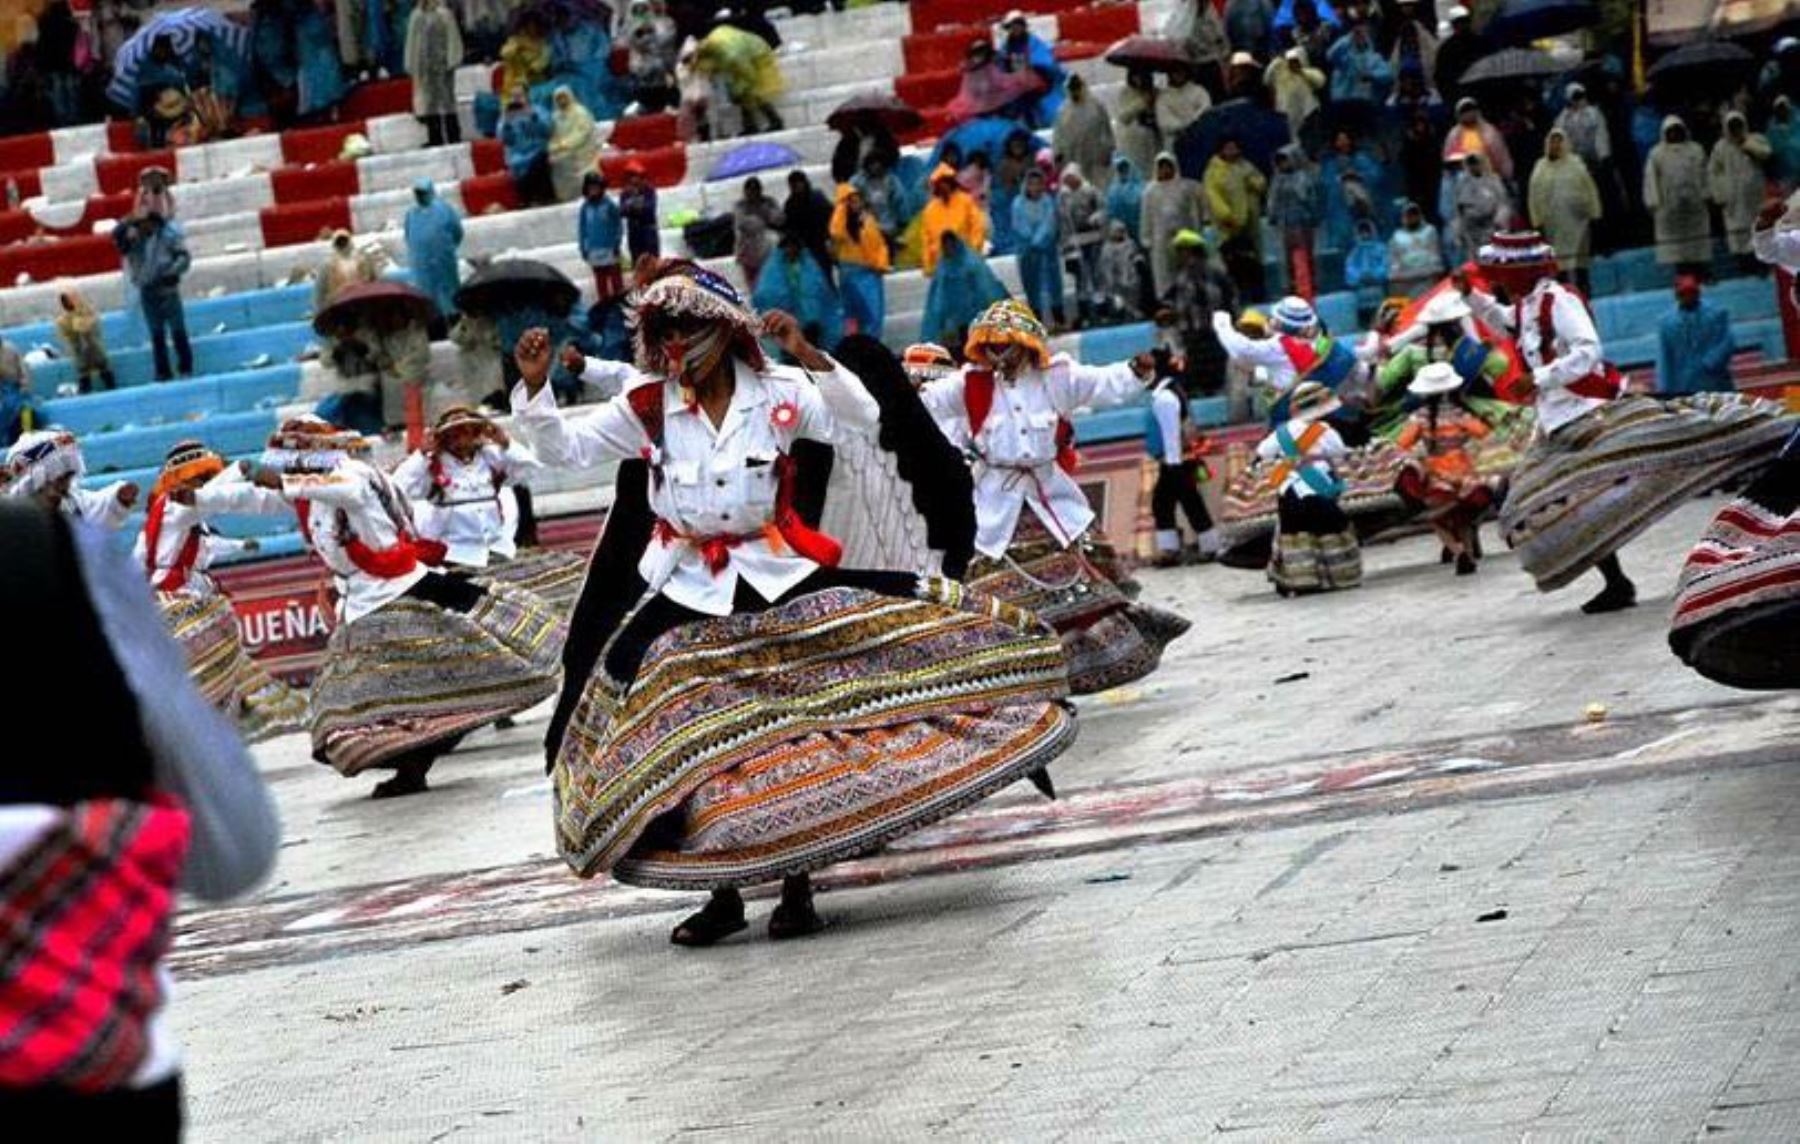 Danza el Wititi participó este año de Parada y Veneración en honor a la Virgen de la Candelaria de Puno. ANDINA